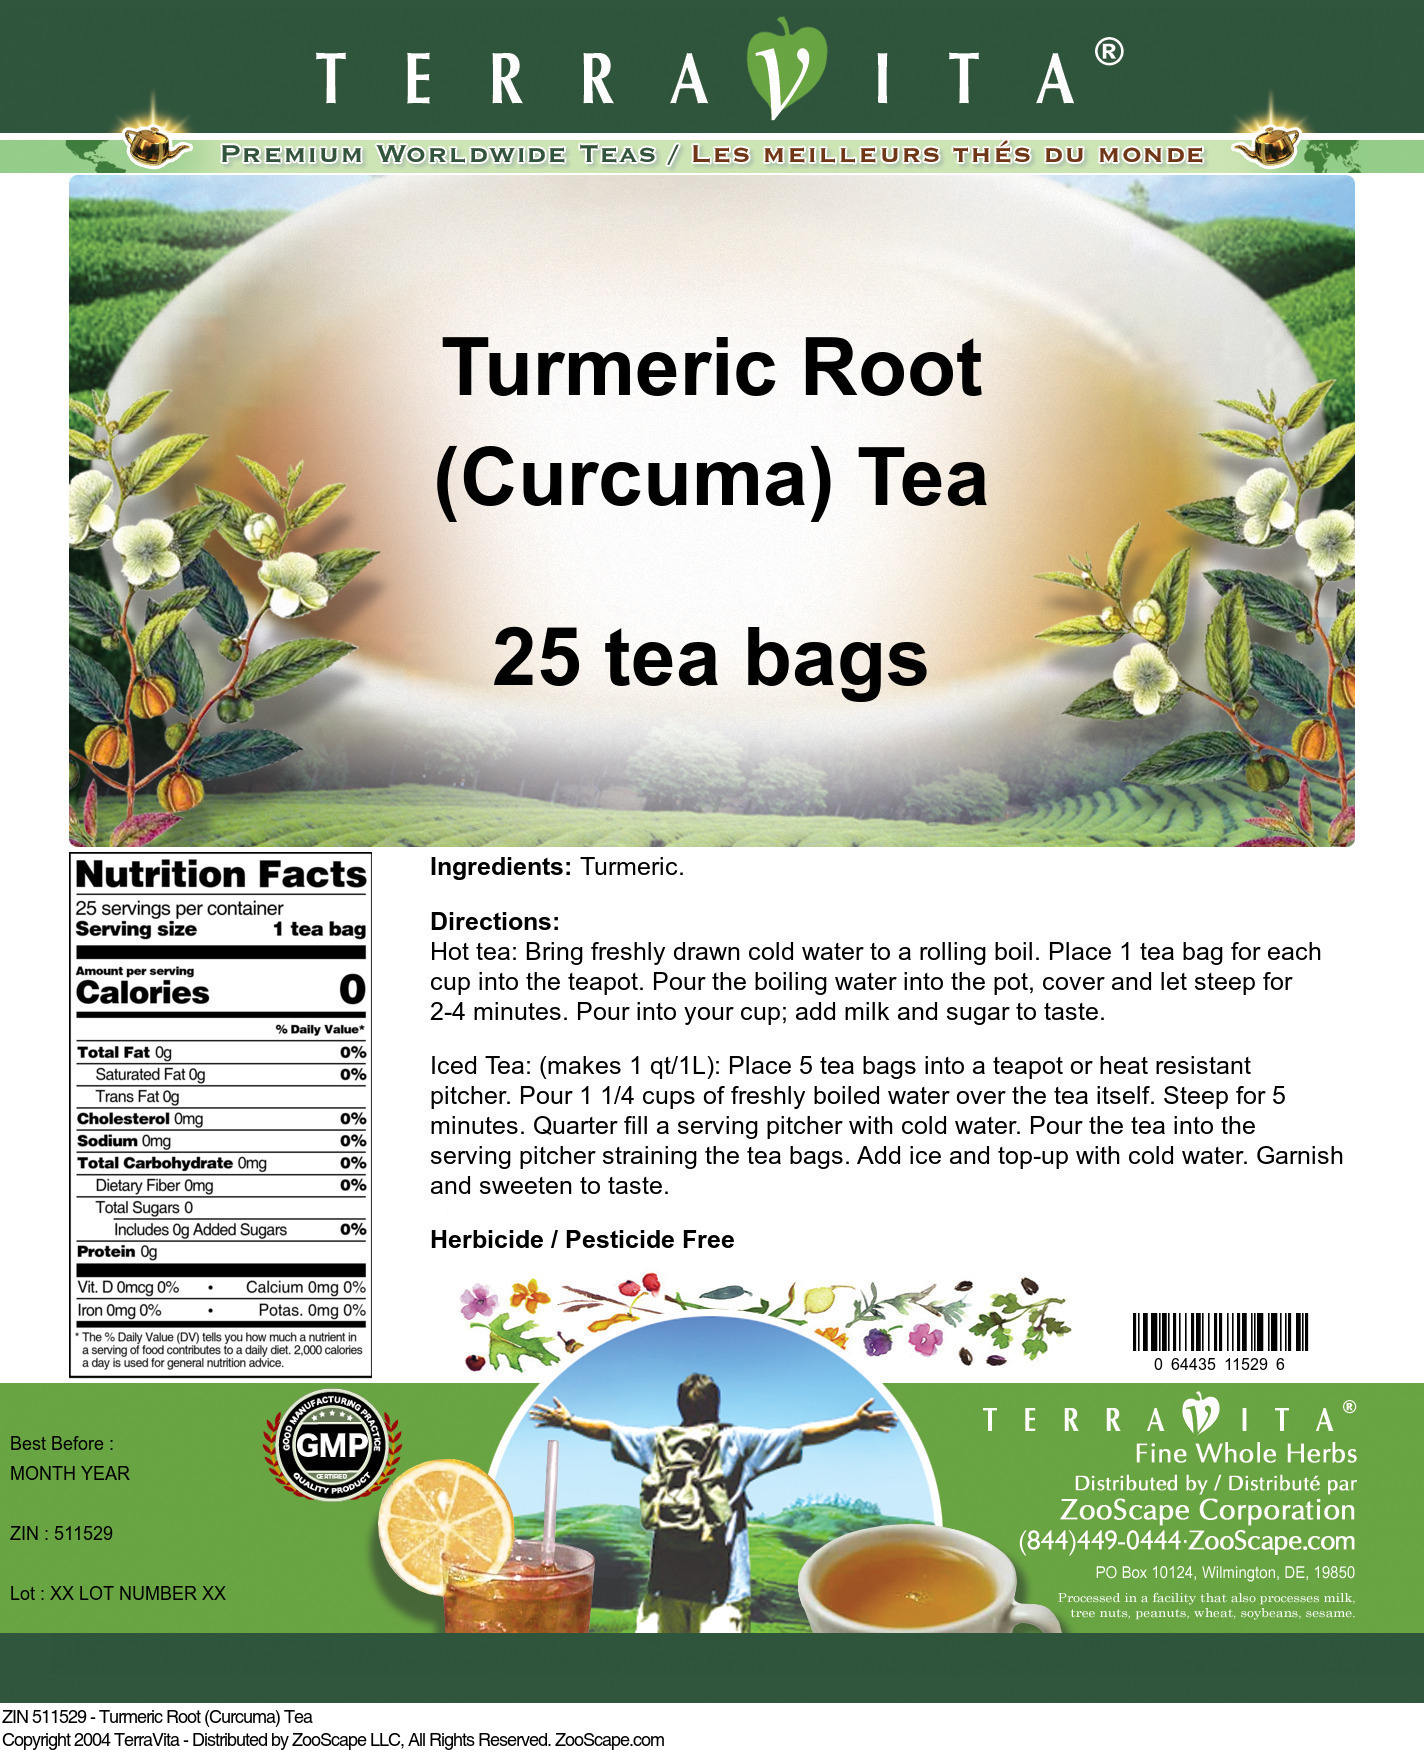 Turmeric Root (Curcuma) Tea - Label